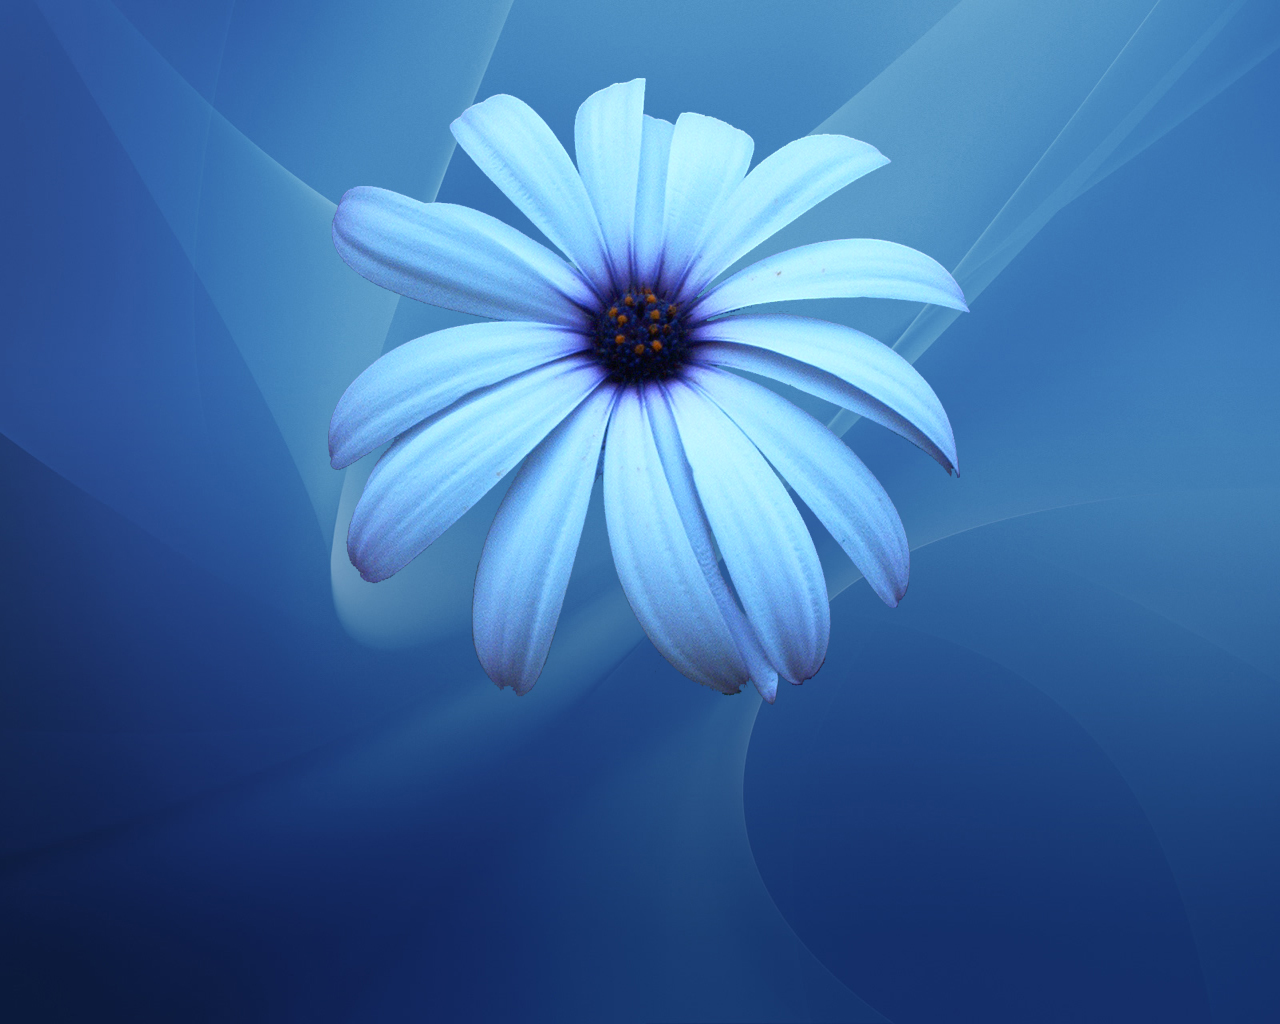 widescreen blue flower image